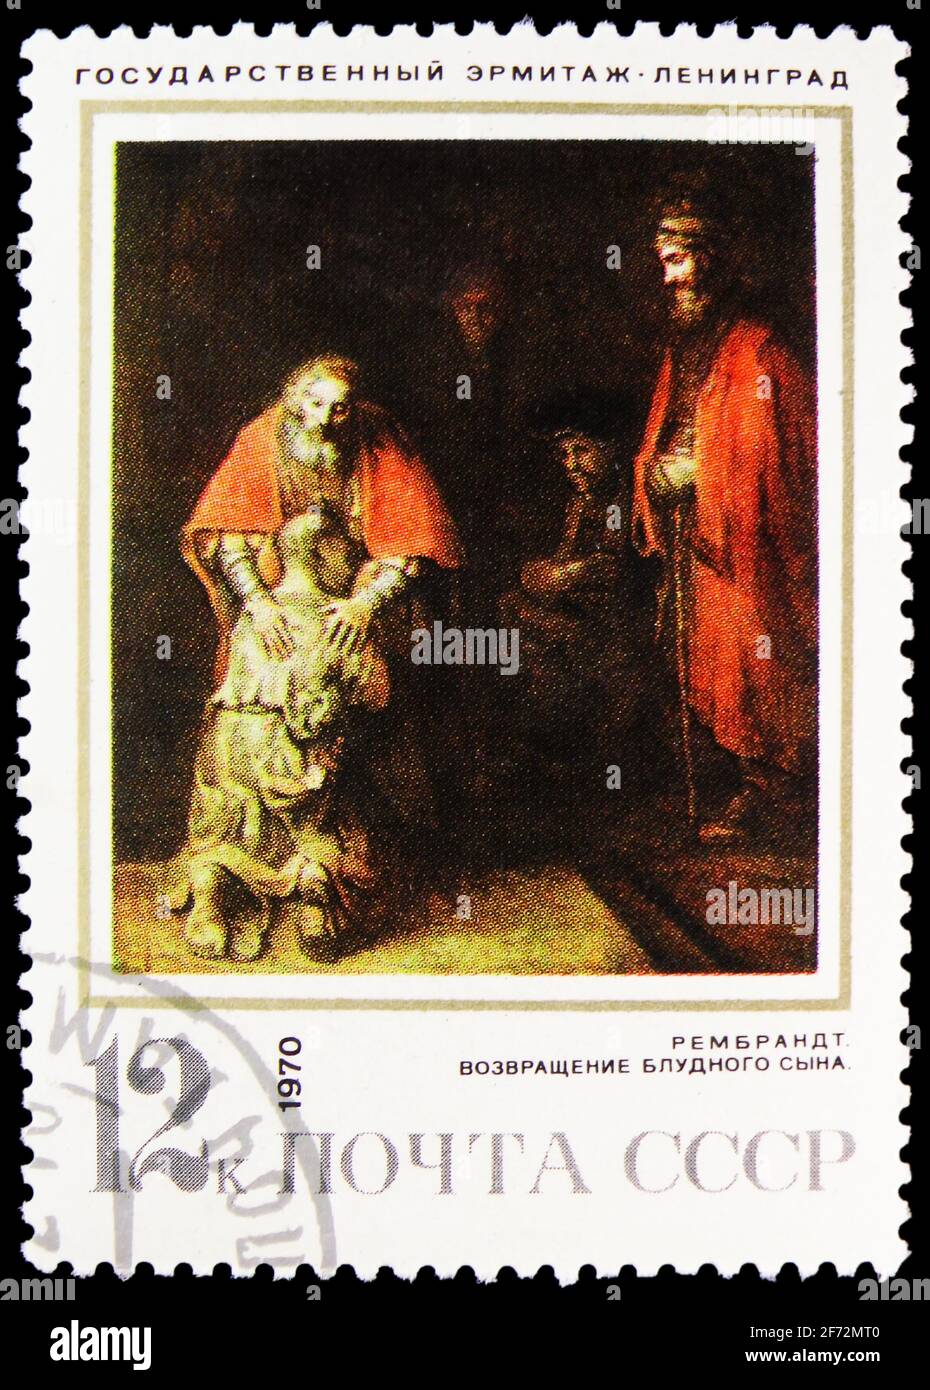 MOSKAU, RUSSLAND - 12. JANUAR 2021: Die in der UdSSR (Russland) gedruckte Briefmarke zeigt die Rückkehr des verlorenen Sohnes, Rembrandt (1669), ausländische Gemälde in Sov Stockfoto